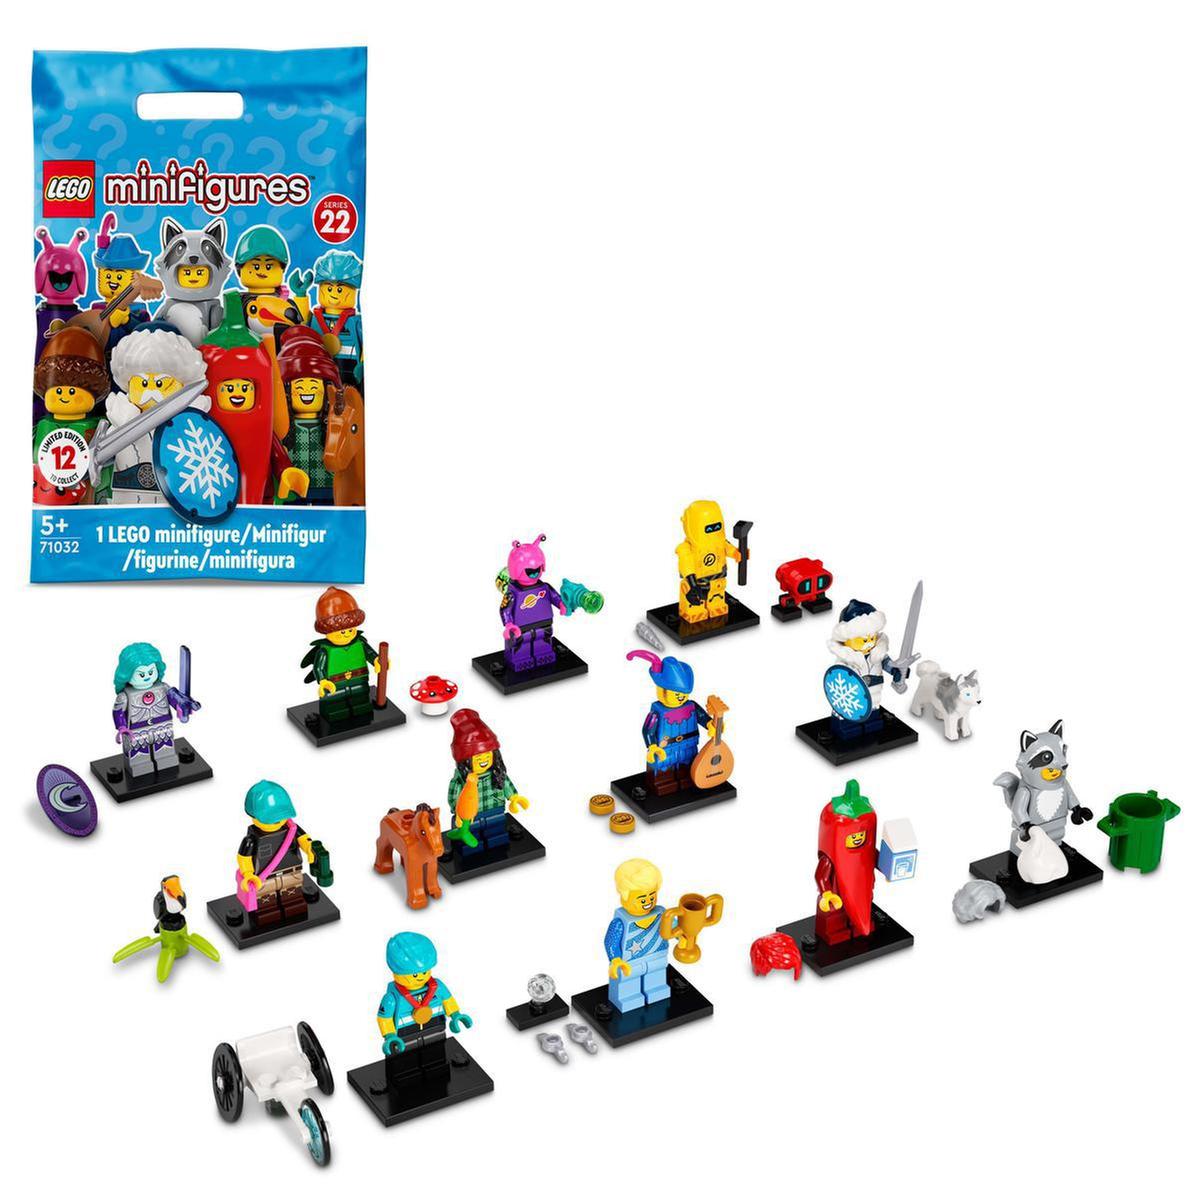 LEGO Minifigures - Série 22 - 71032 (vários modelos) | LEGO MINI FIGURAS |  Loja de brinquedos e videojogos Online Toysrus